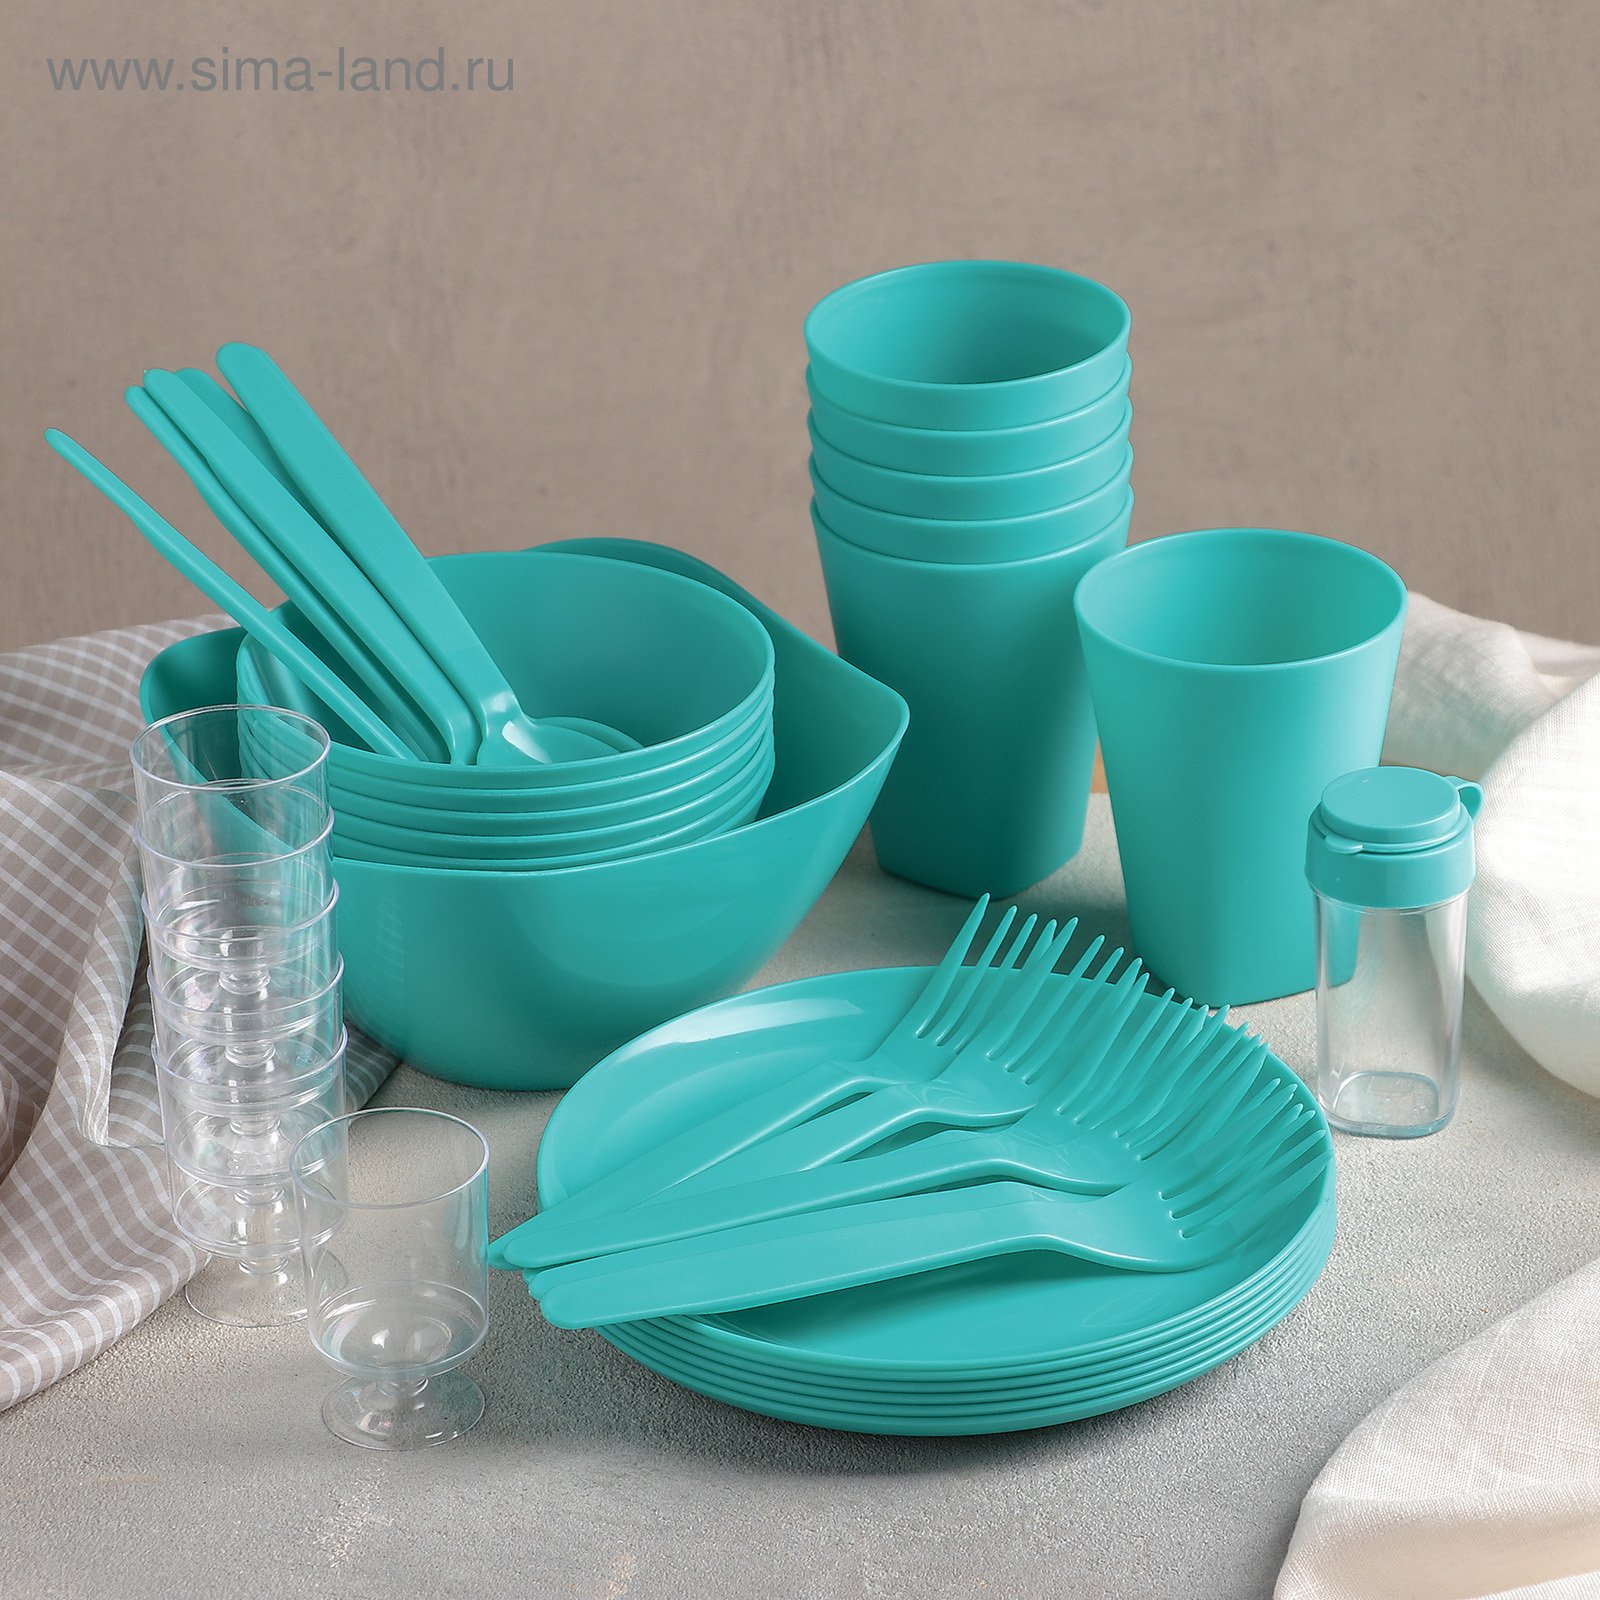 Магазин пластиковой посуды. Набор для пикника Picniс, 39 предметов, цвет бирюза Berossi. Пластиковая посуда. Посуда одноразовая пластиковая. Набор пластиковой посуды.